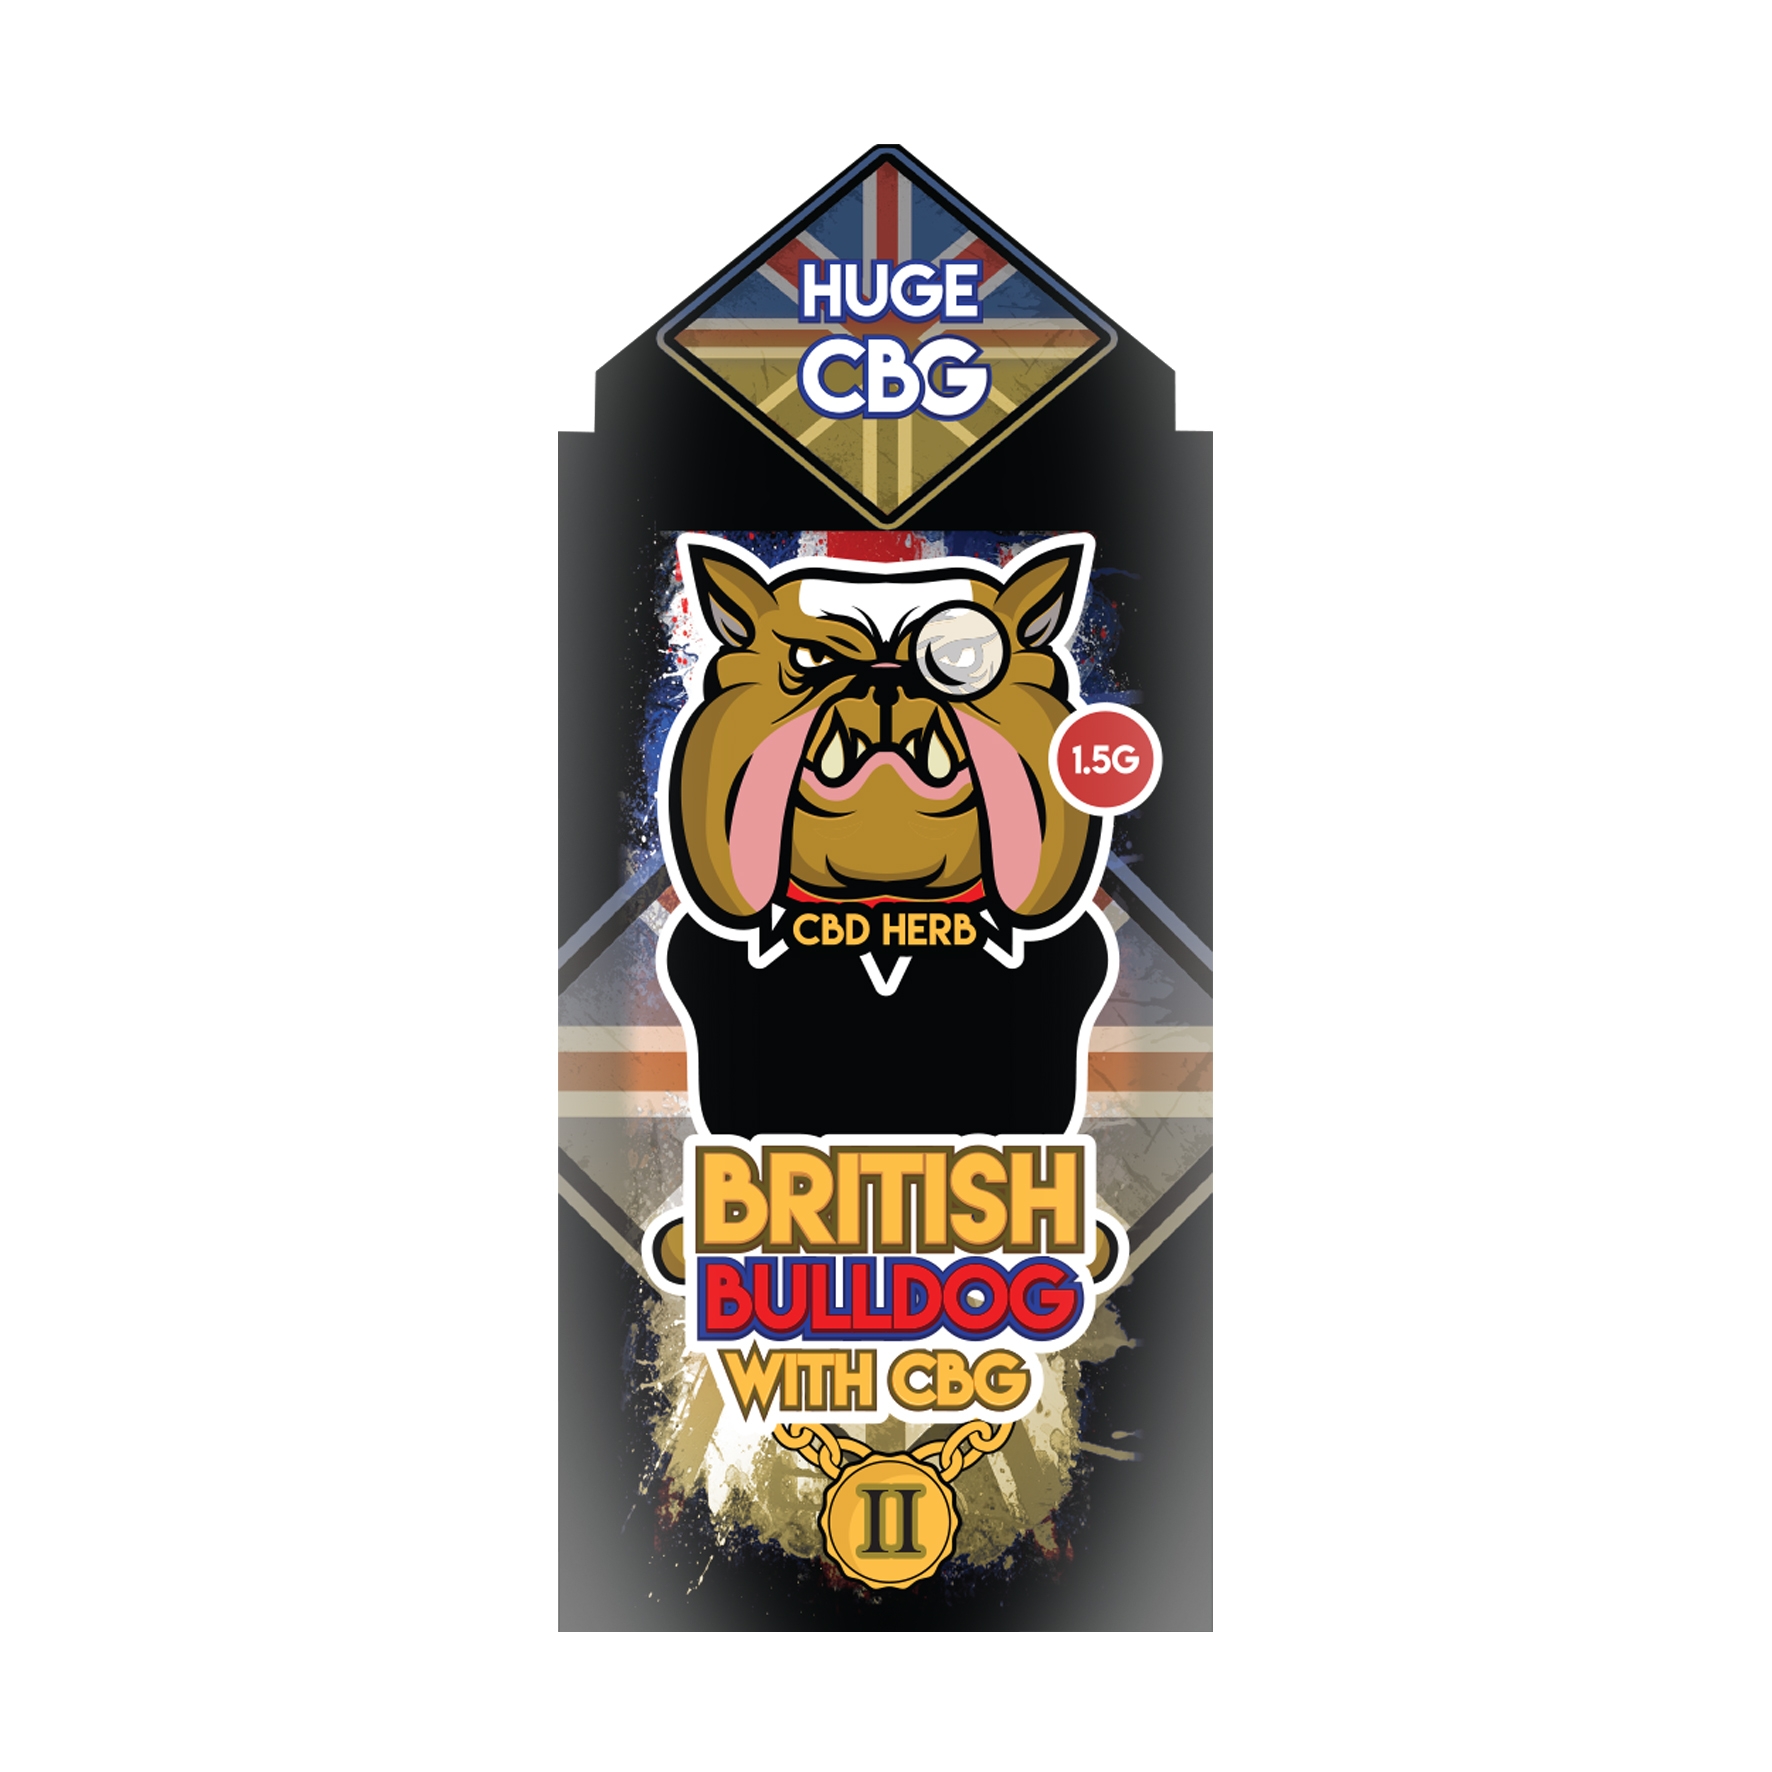 New British Bulldog 2 - 1.5G - 3G 50% CBD / CBG